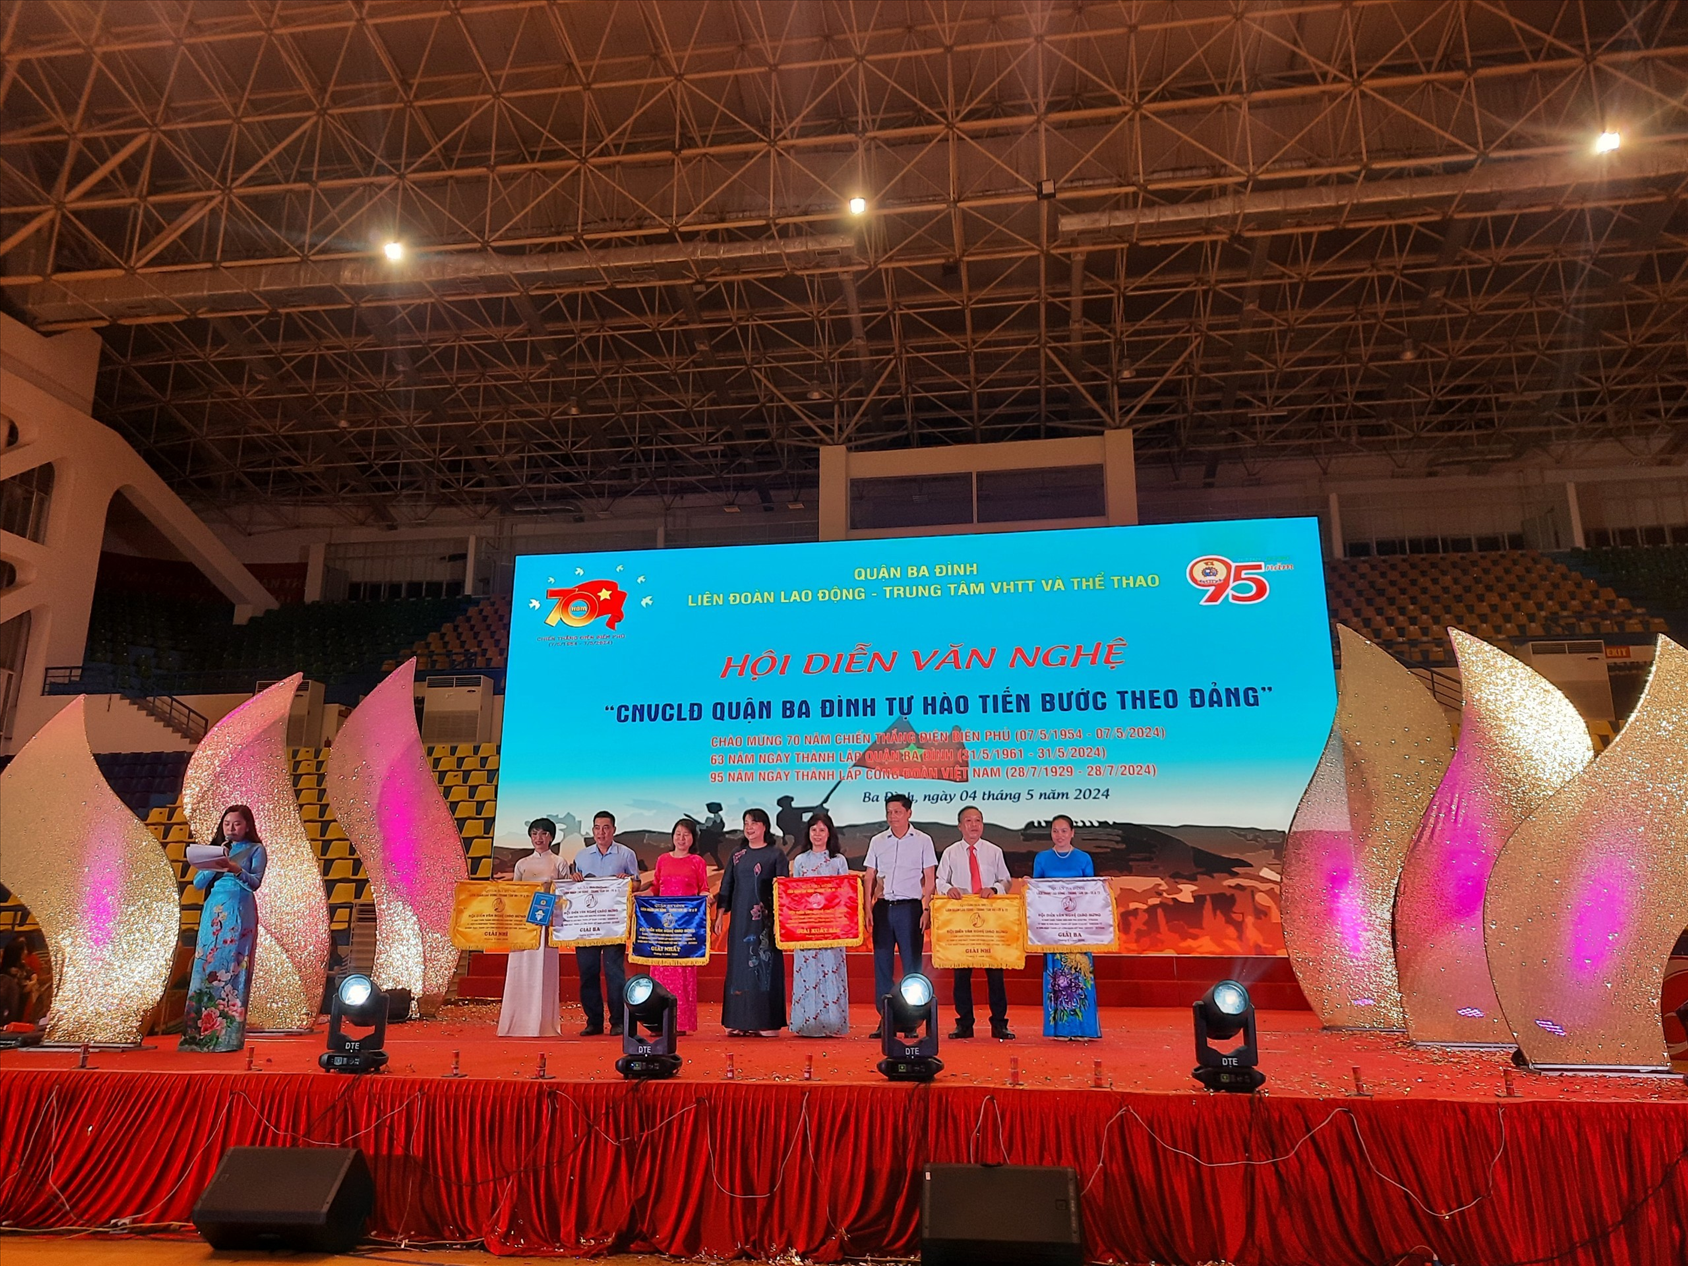 Công đoàn viên trường THCS Phúc Xá tích cực tham gia hội diễn văn nghệ “CNVCNL Quận Ba Đình tự hào tiến bước theo Đảng”